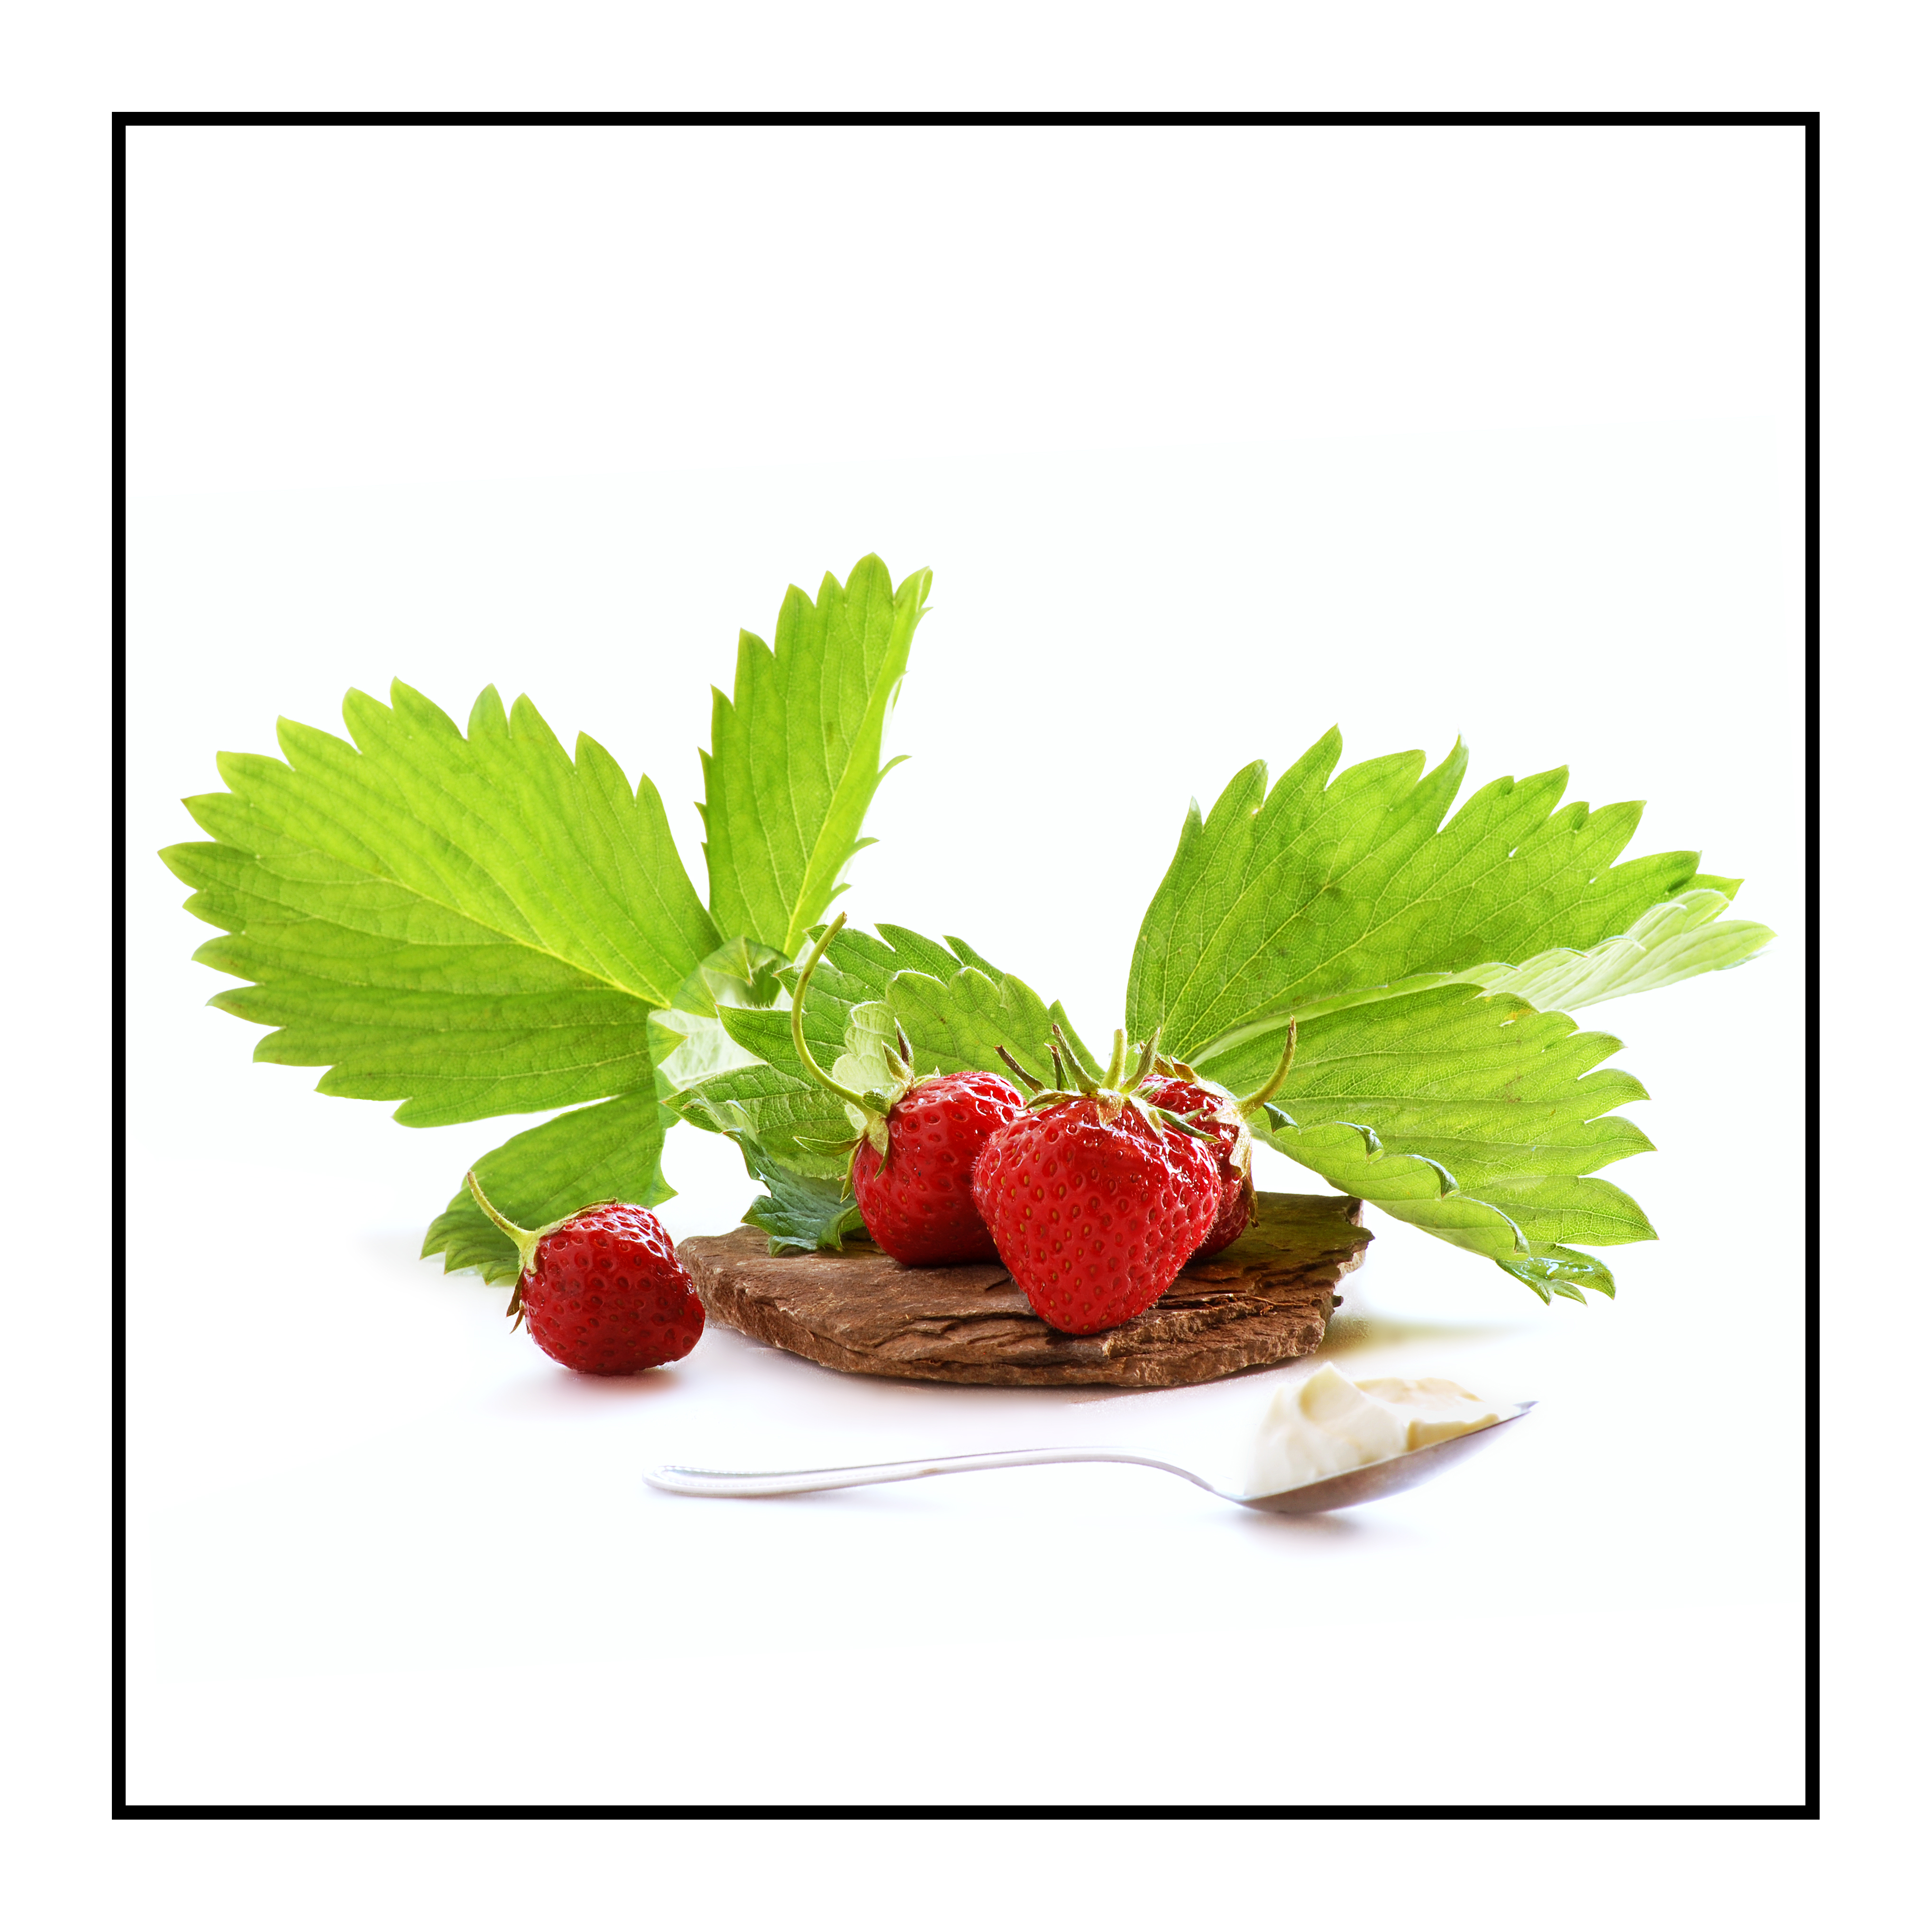 fraises-bio-Pommes bio- locales- arboriculteur- ferme-magasin de producteurs - Gilly sur Isère / Albertville- savoie - terroir